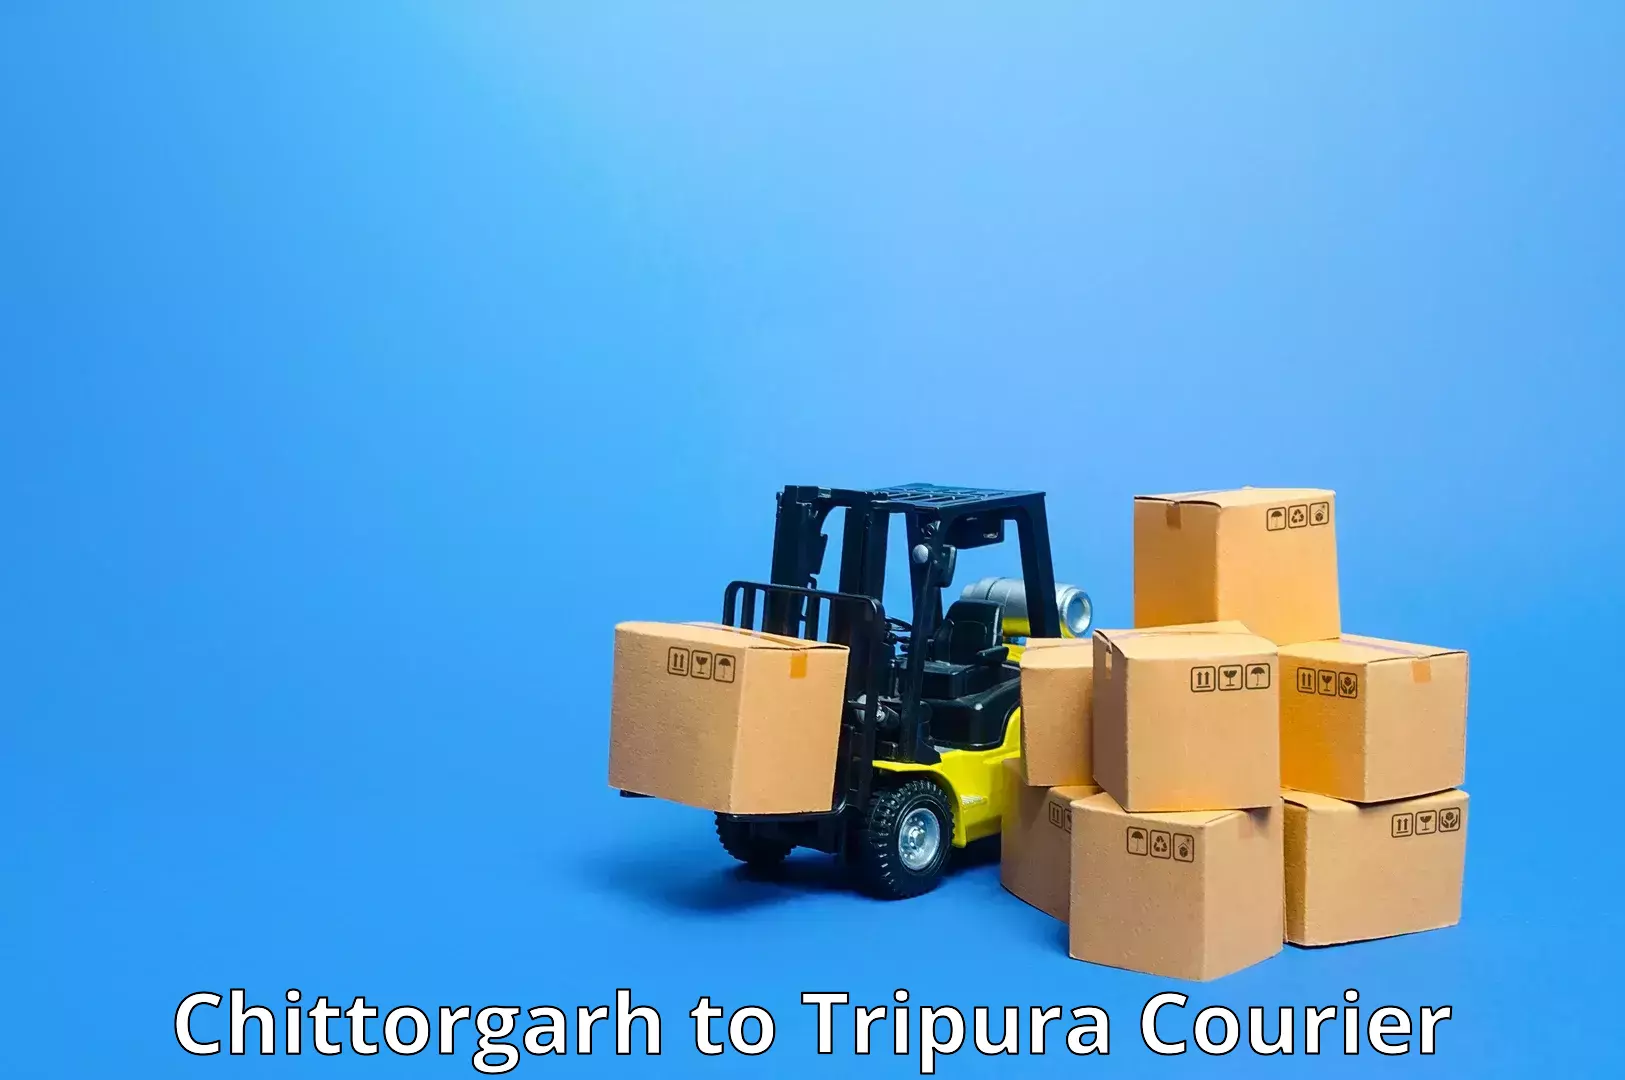 Premium courier solutions in Chittorgarh to Amarpur